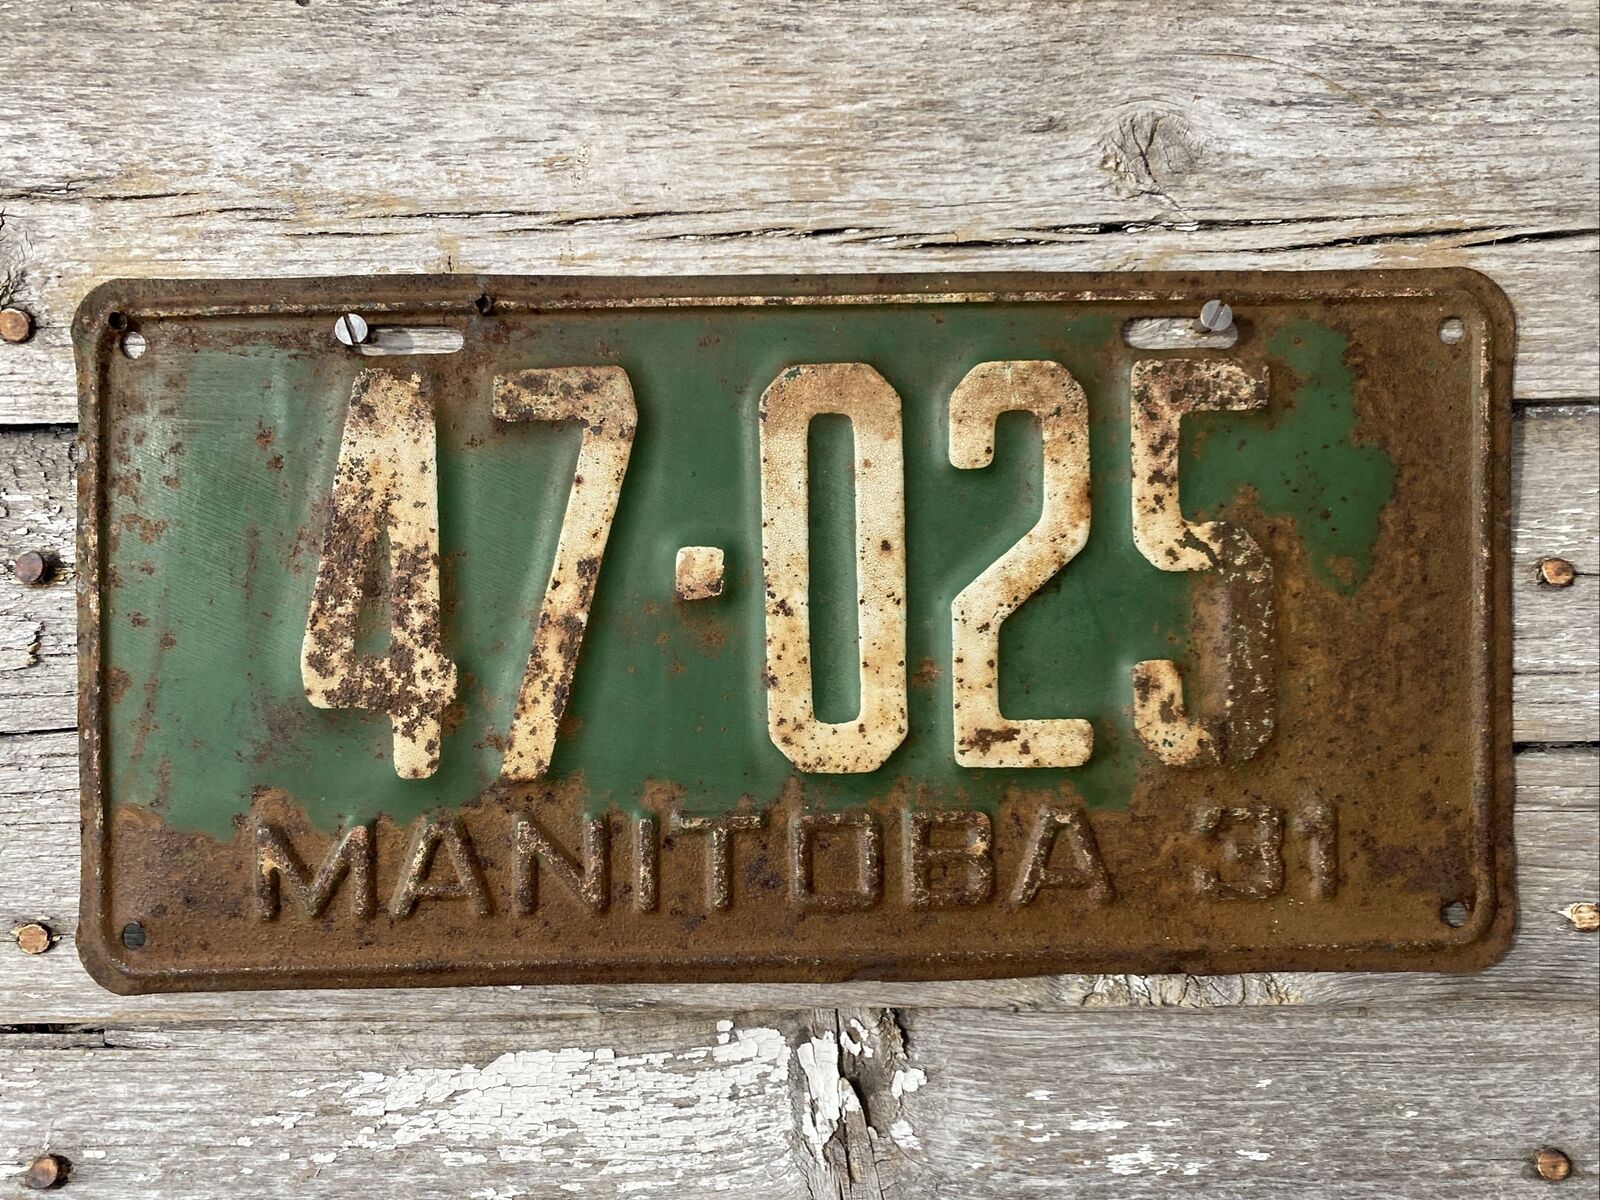 1931 Manitoba License Plate #47-025 Canada Green & White ‘31